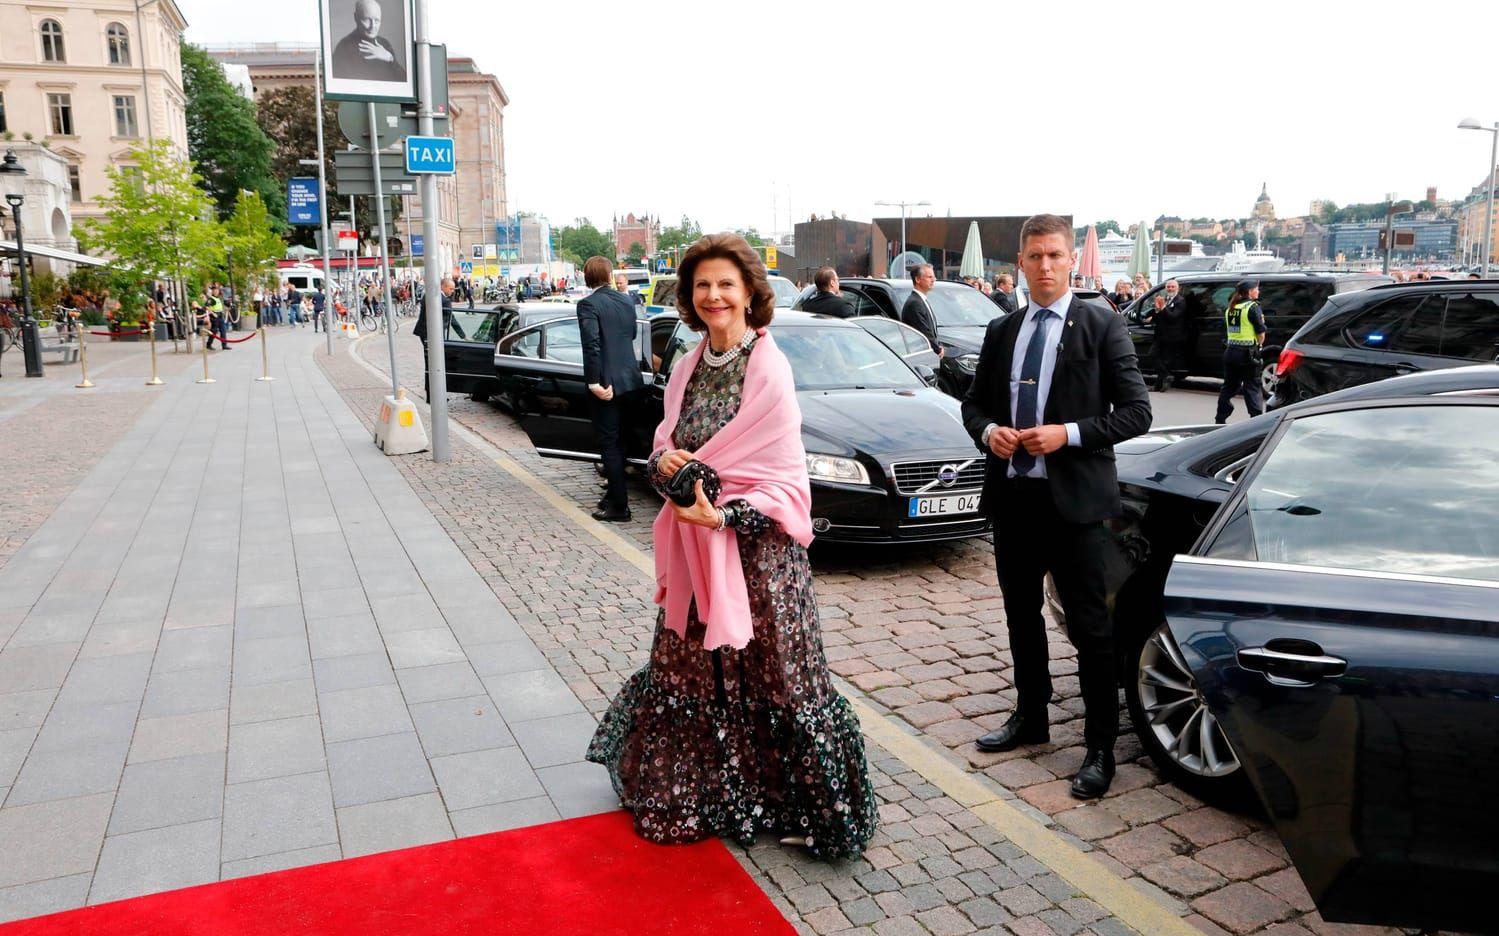 Drottning Silvia anländer till en bankett för årets polarpristagare på Grand Hotel. Foto: TT